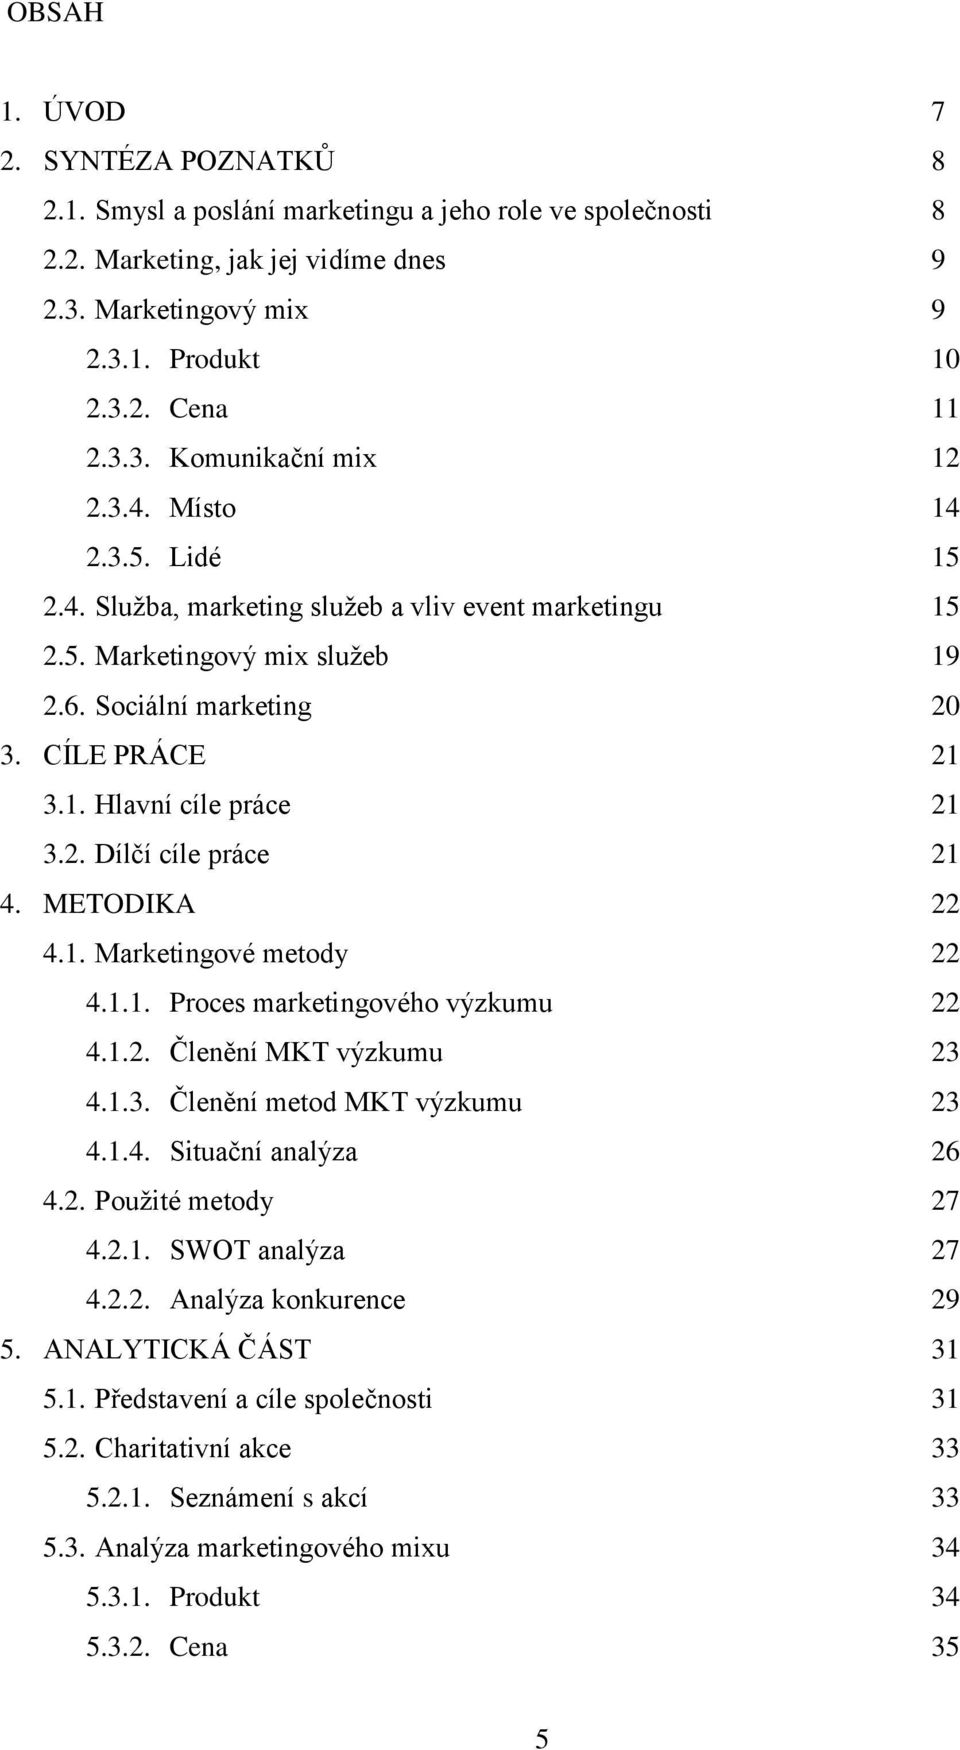 METODIKA 22 4.1. Marketingové metody 22 4.1.1. Proces marketingového výzkumu 22 4.1.2. Členění MKT výzkumu 23 4.1.3. Členění metod MKT výzkumu 23 4.1.4. Situační analýza 26 4.2. Pouţité metody 27 4.2.1. SWOT analýza 27 4.